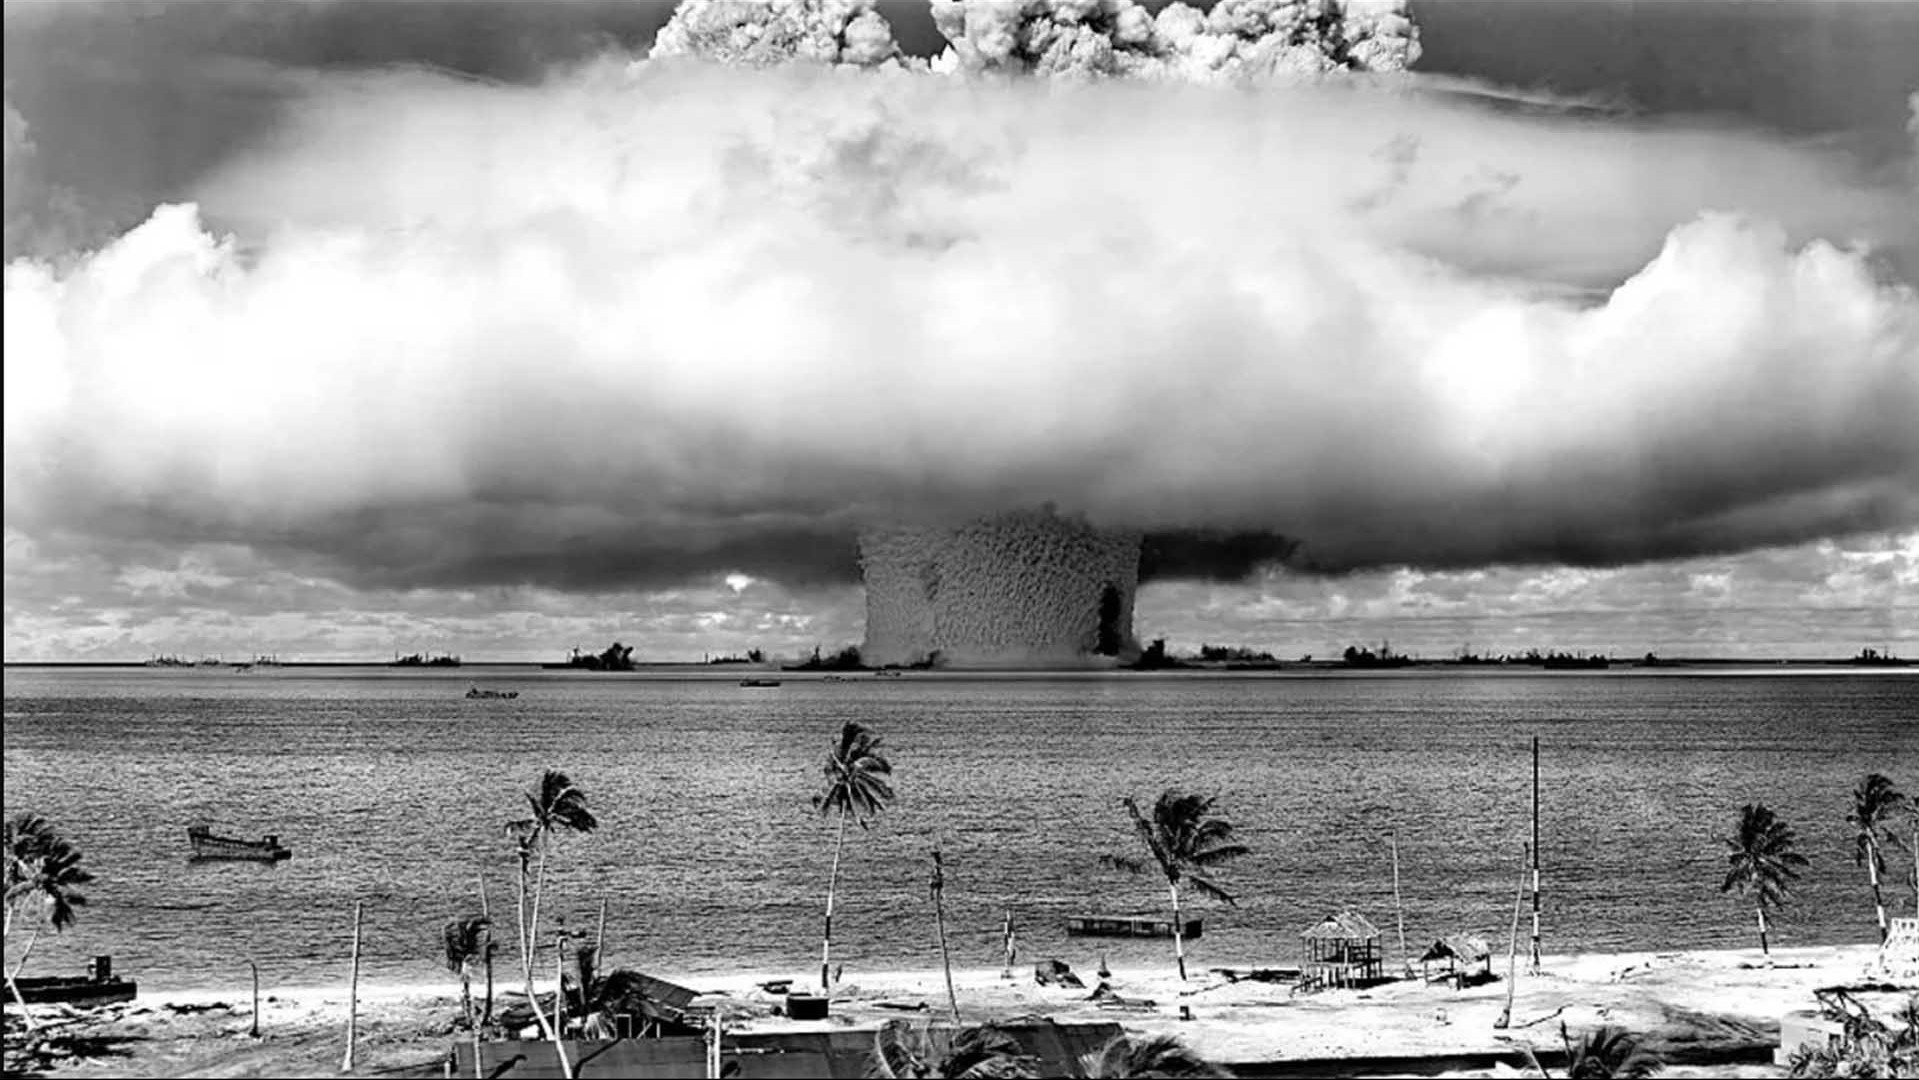 Hủy phê chuẩn Hiệp ước cấm thử hạt nhân toàn diện, Nga mong tạo thế cân bằng với Mỹ nhưng lại dấy lên mối lo ngại mới